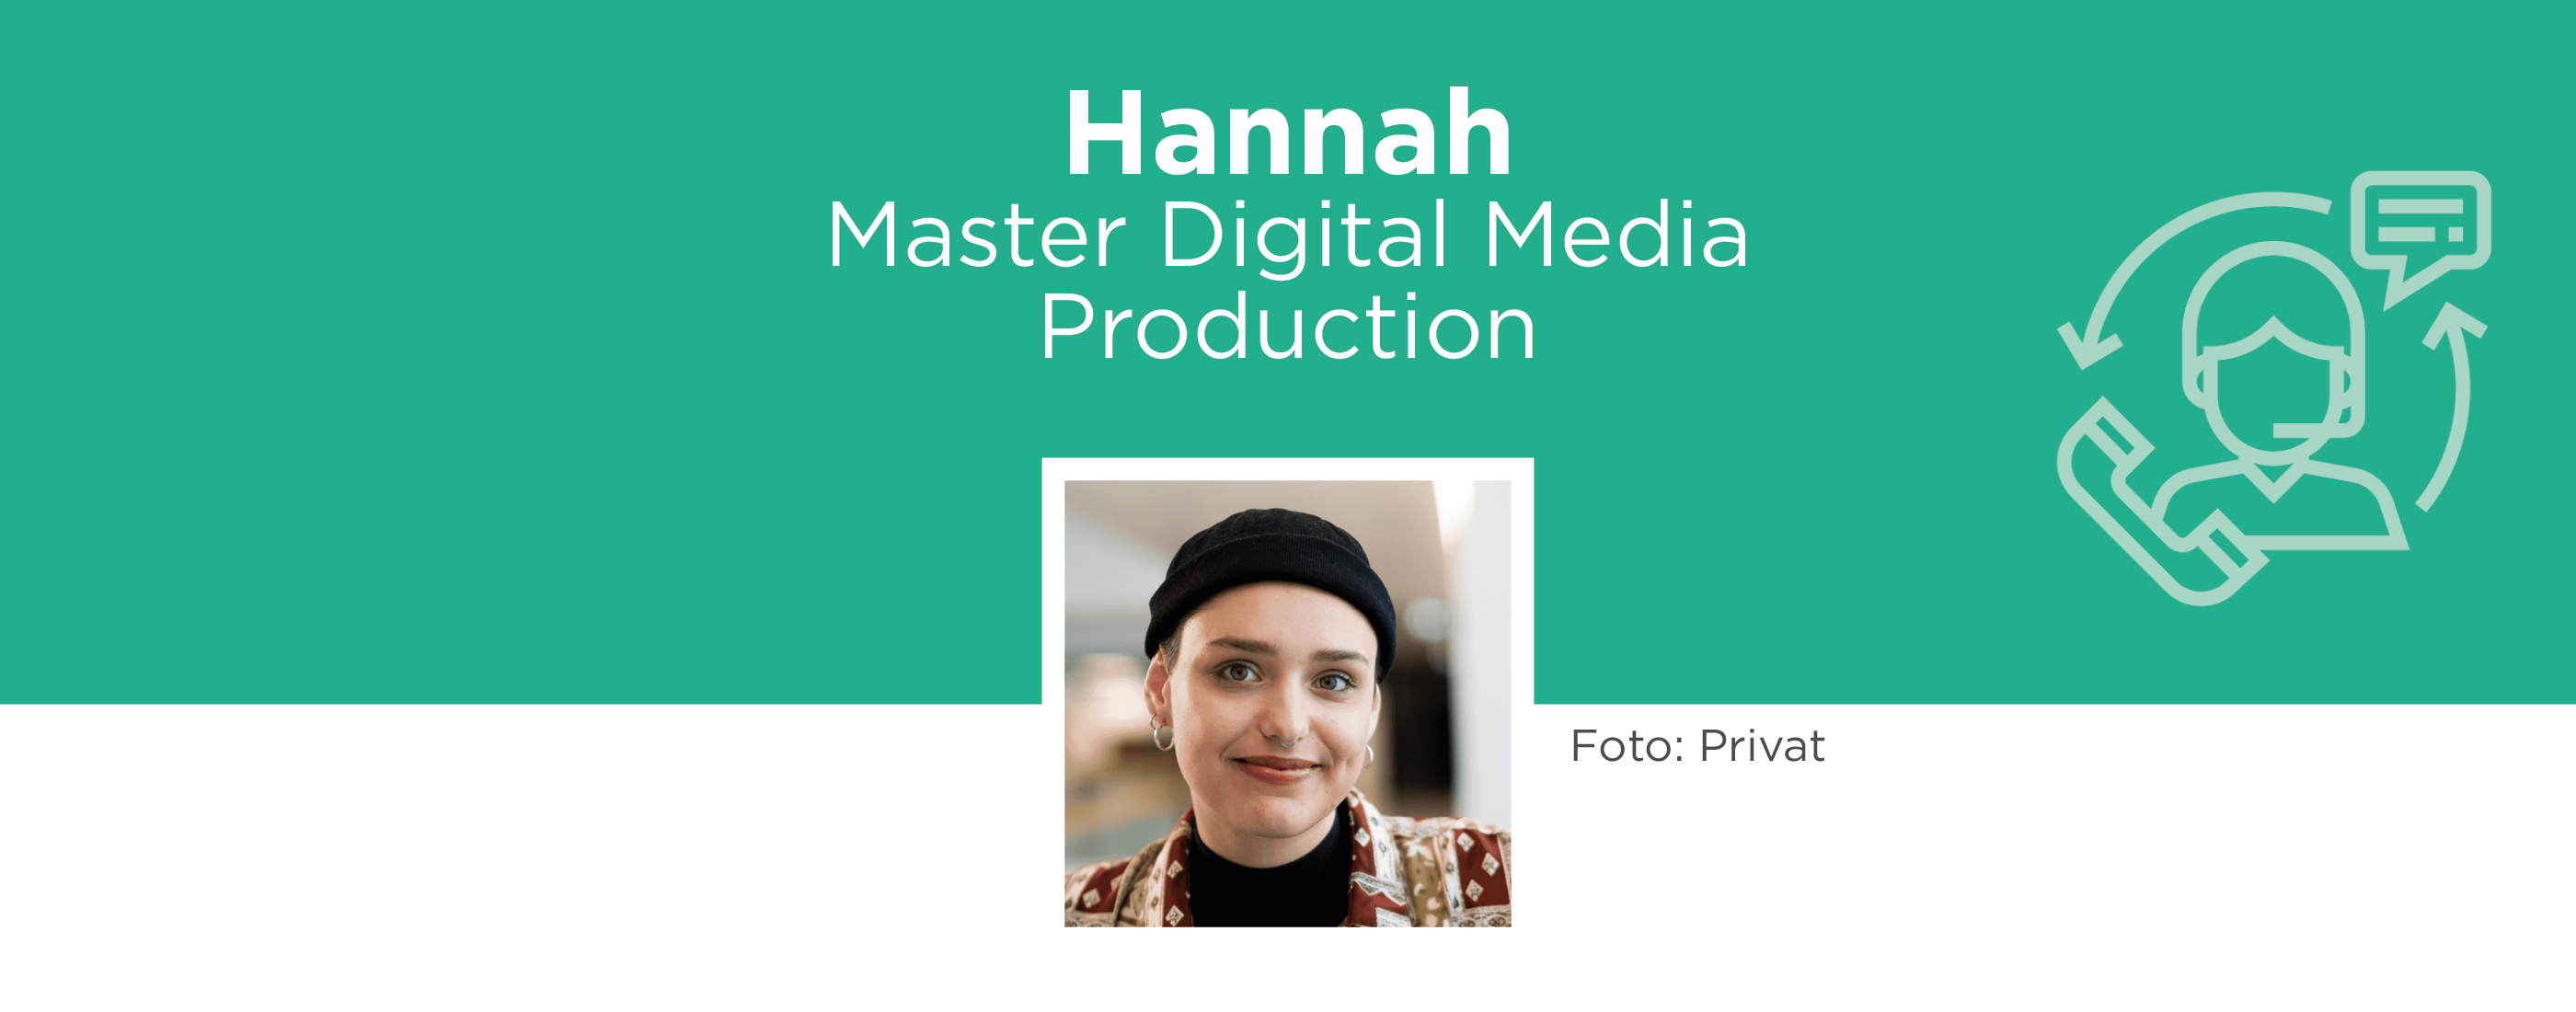 Hannah, Master Digital Media Production